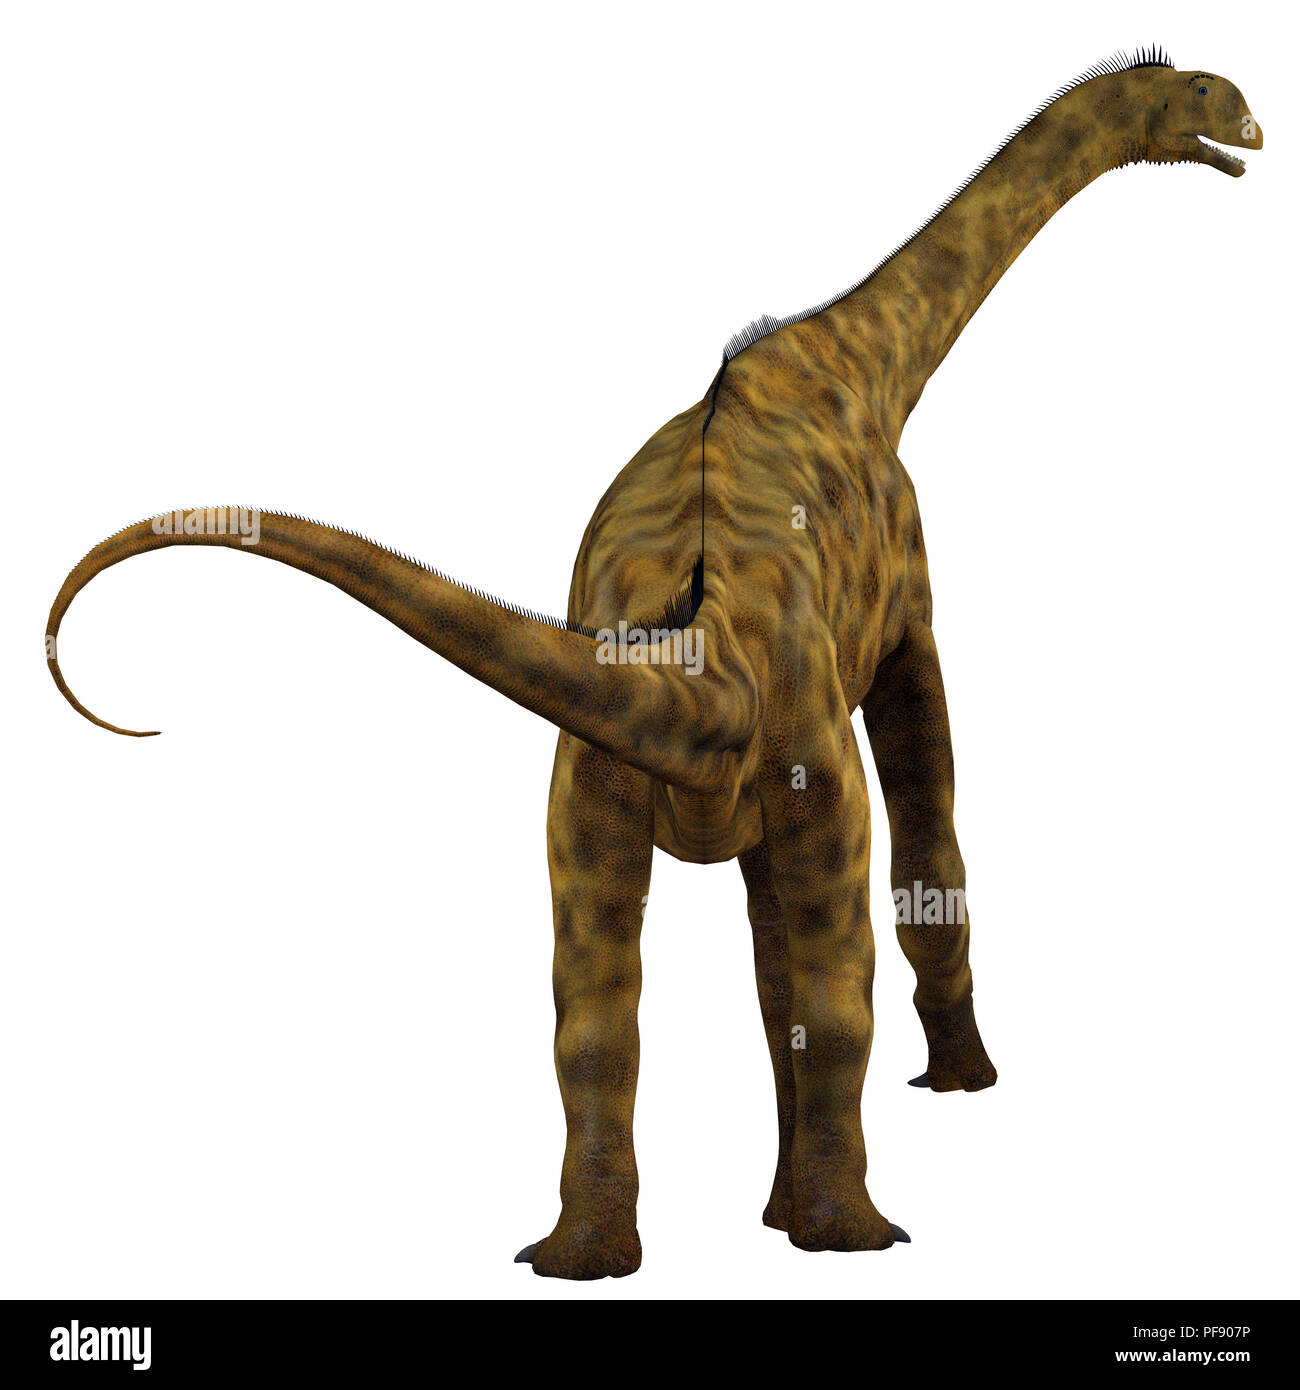 Atlasaurus Dinosaurier - Atlasaurus war ein Pflanzenfressenden sauropoden Dinosaurier, die in Marokko, Nordafrika während der Kreidezeit lebten. Stockfoto